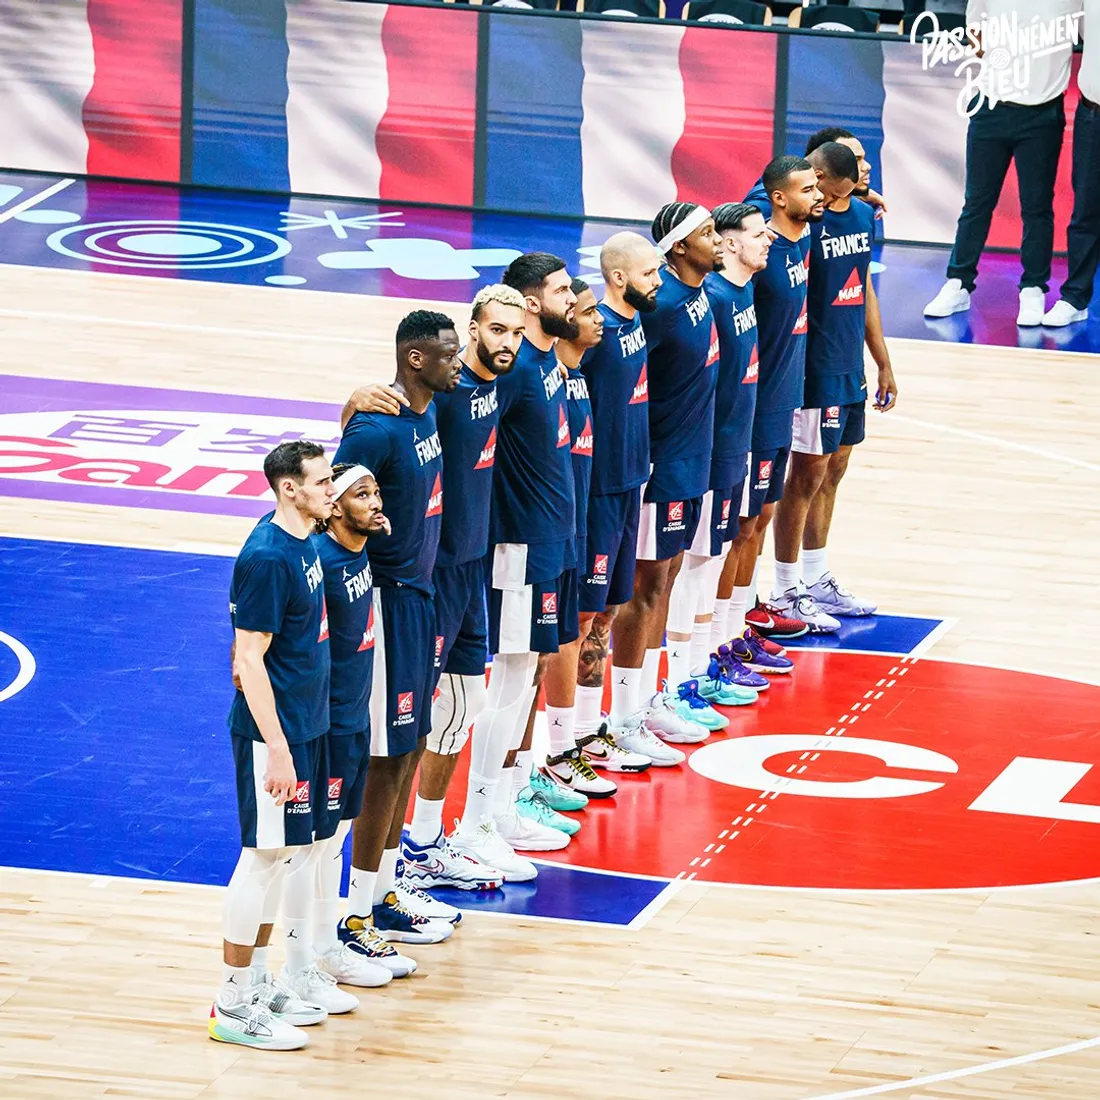 Les basketteurs Français